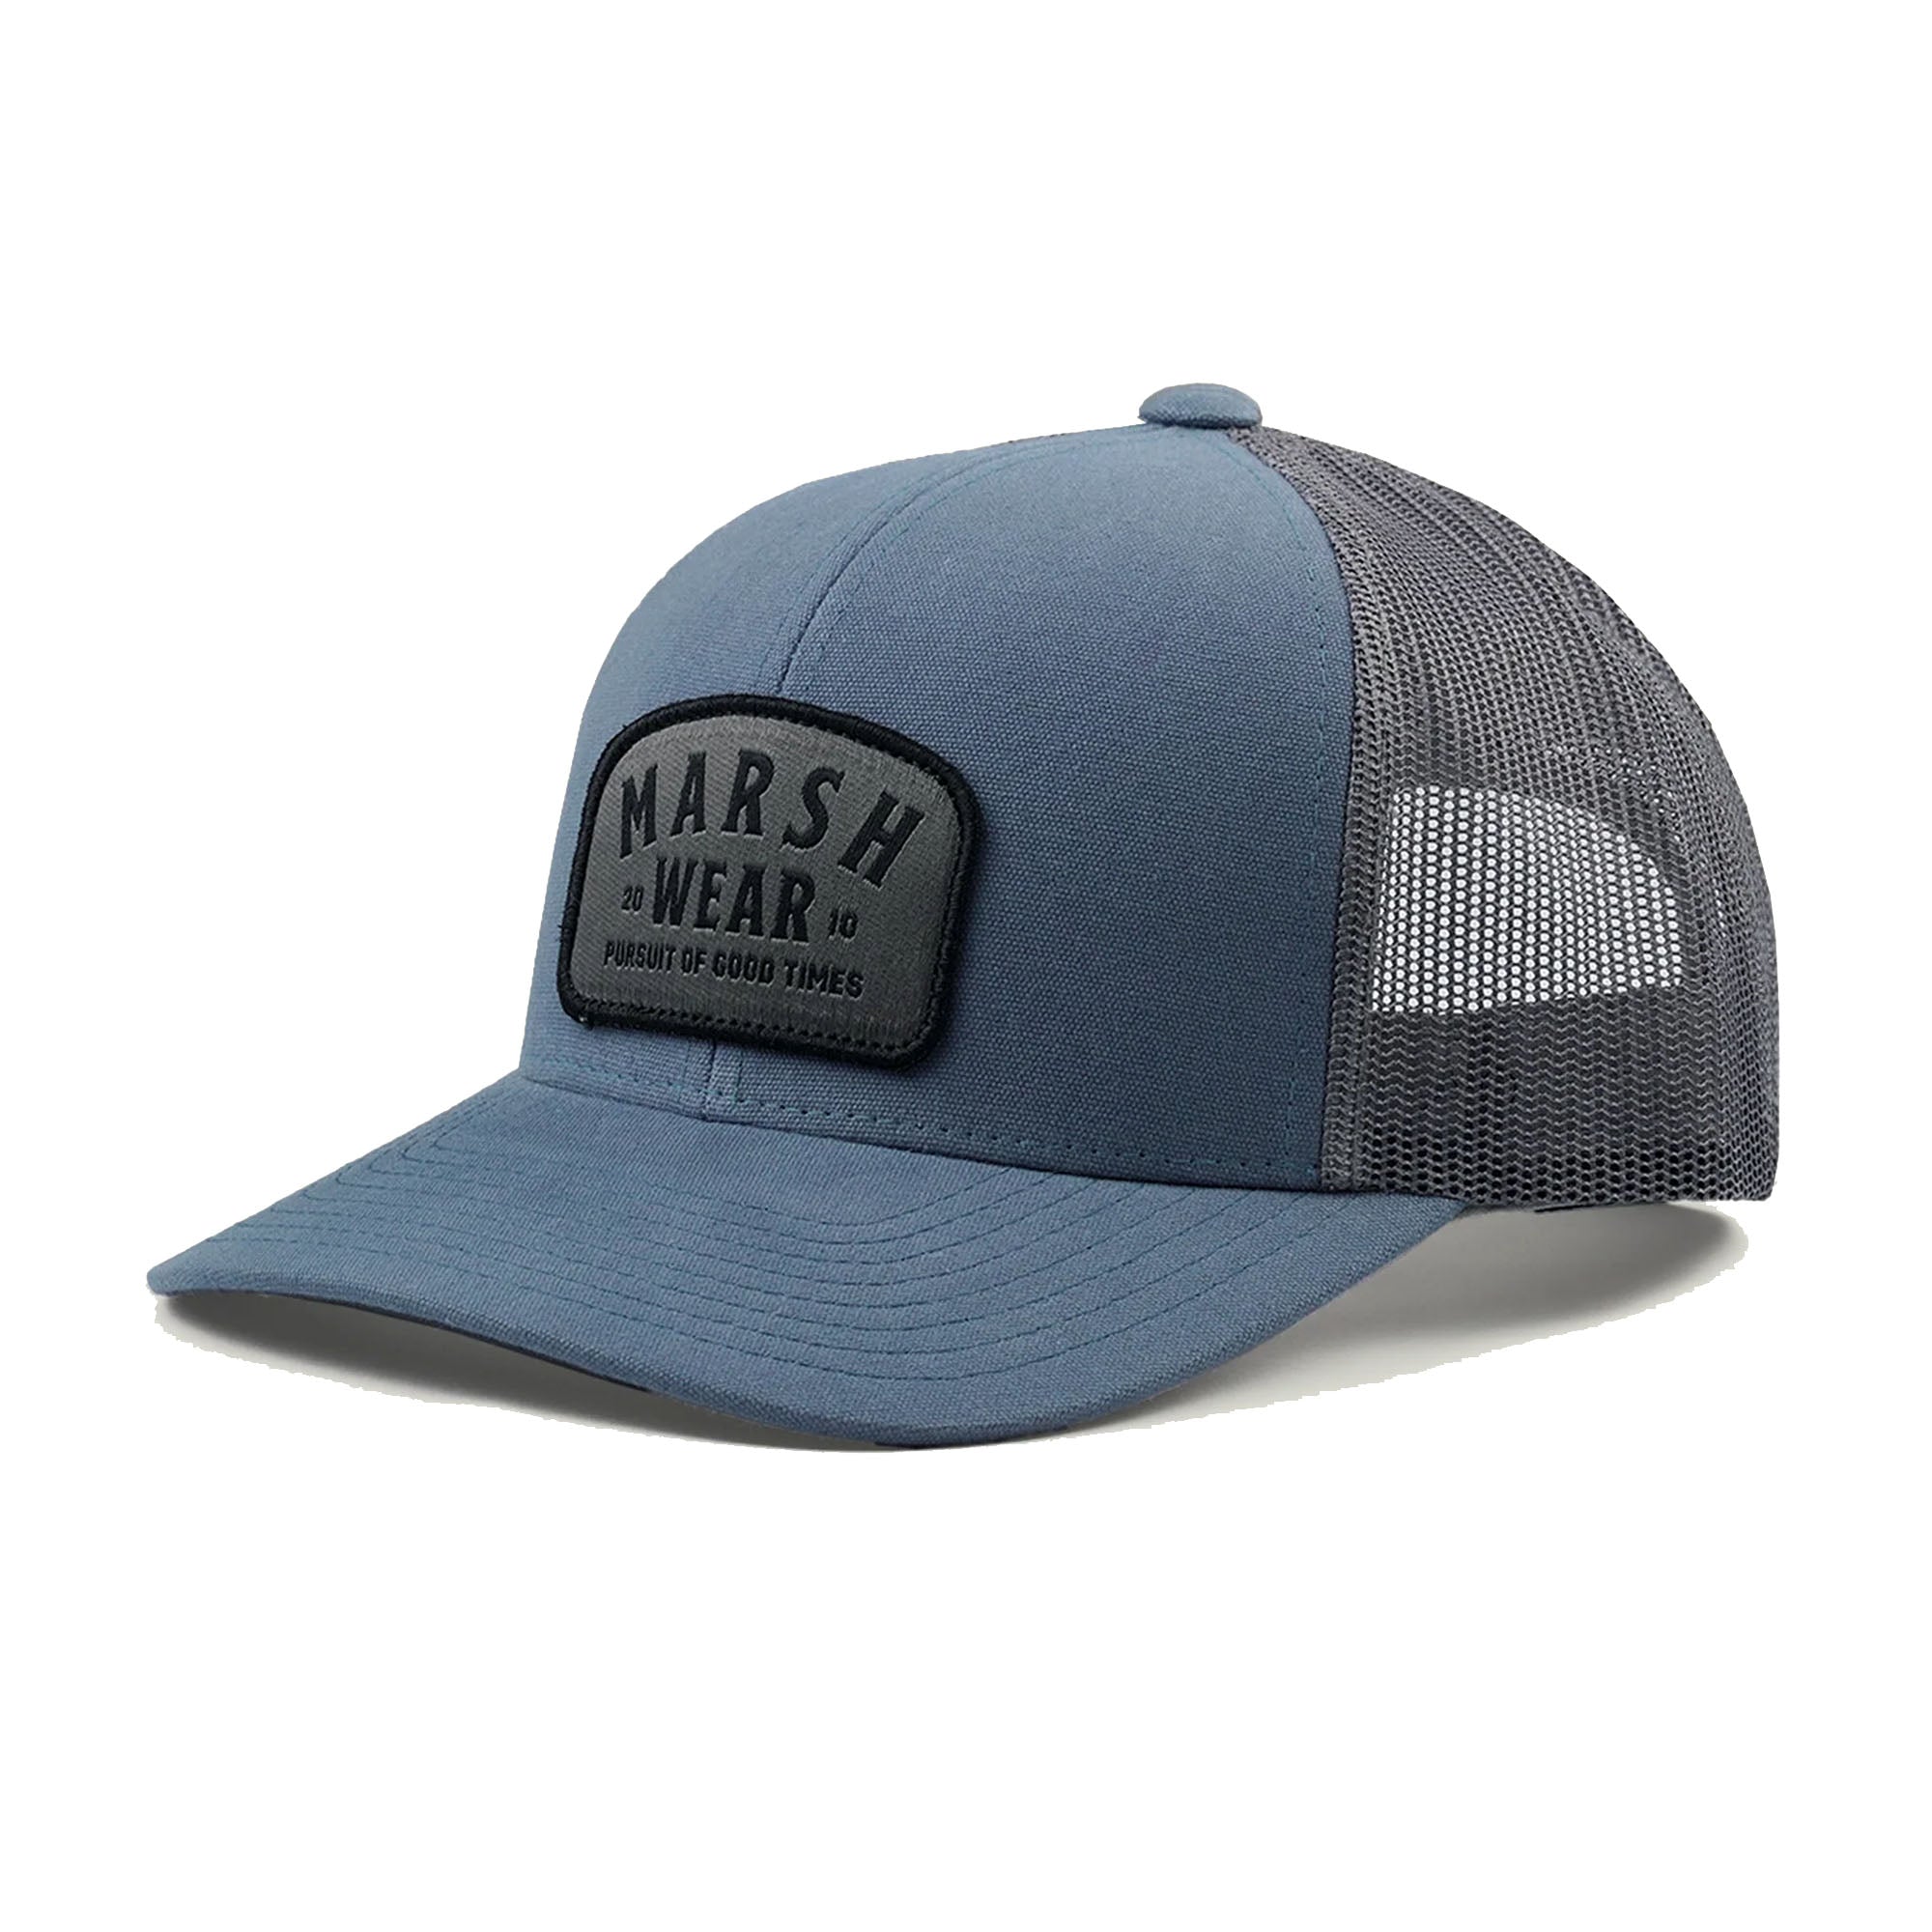 Marsh Wear Alton Men's Trucker Hat